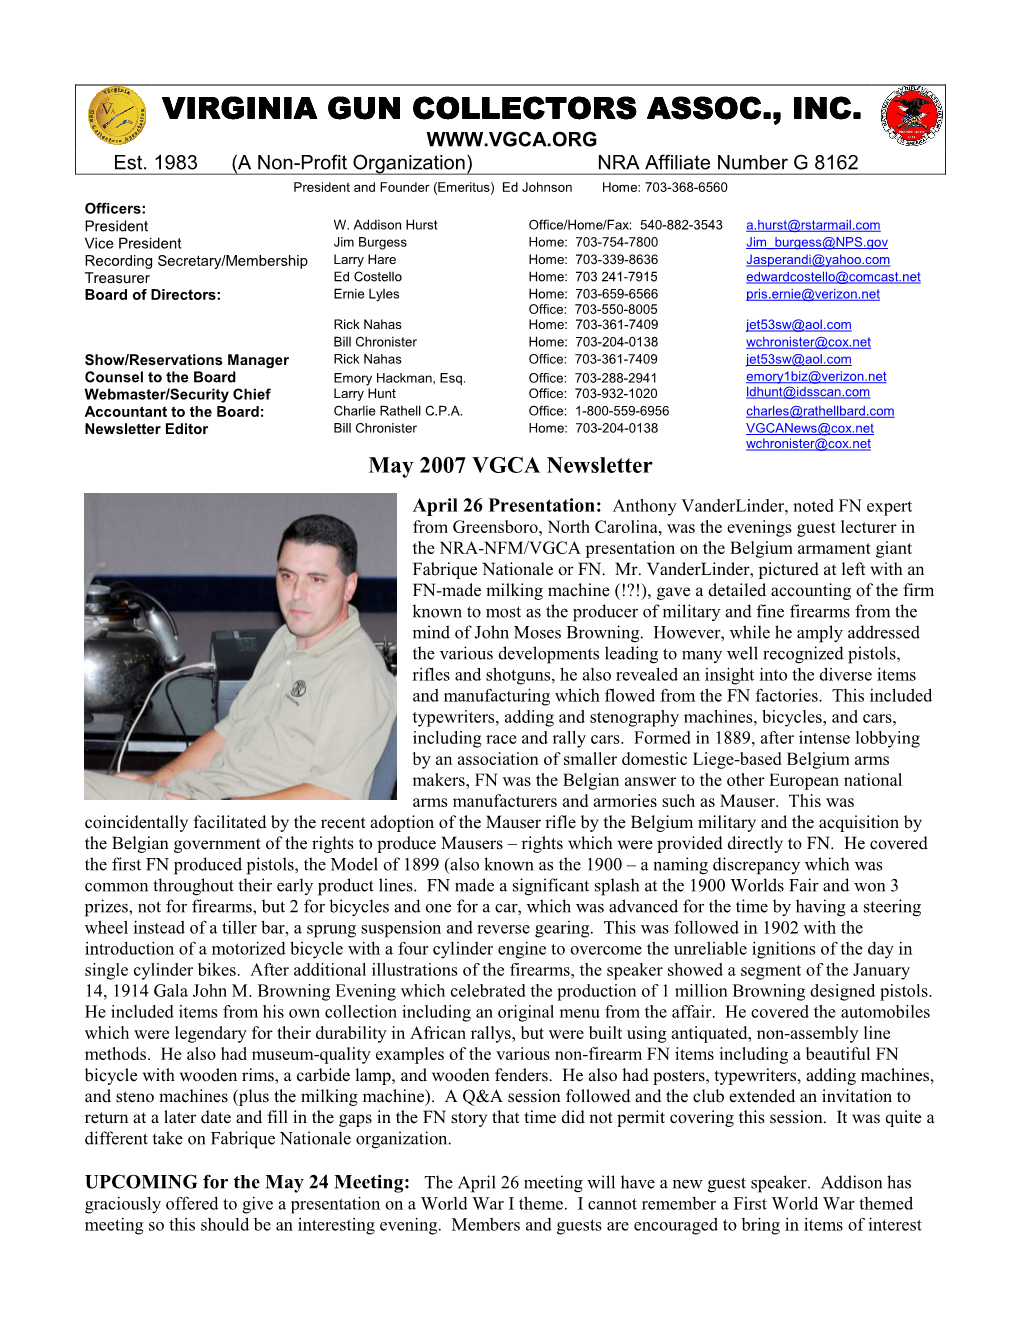 2007 VGCA Newsletter